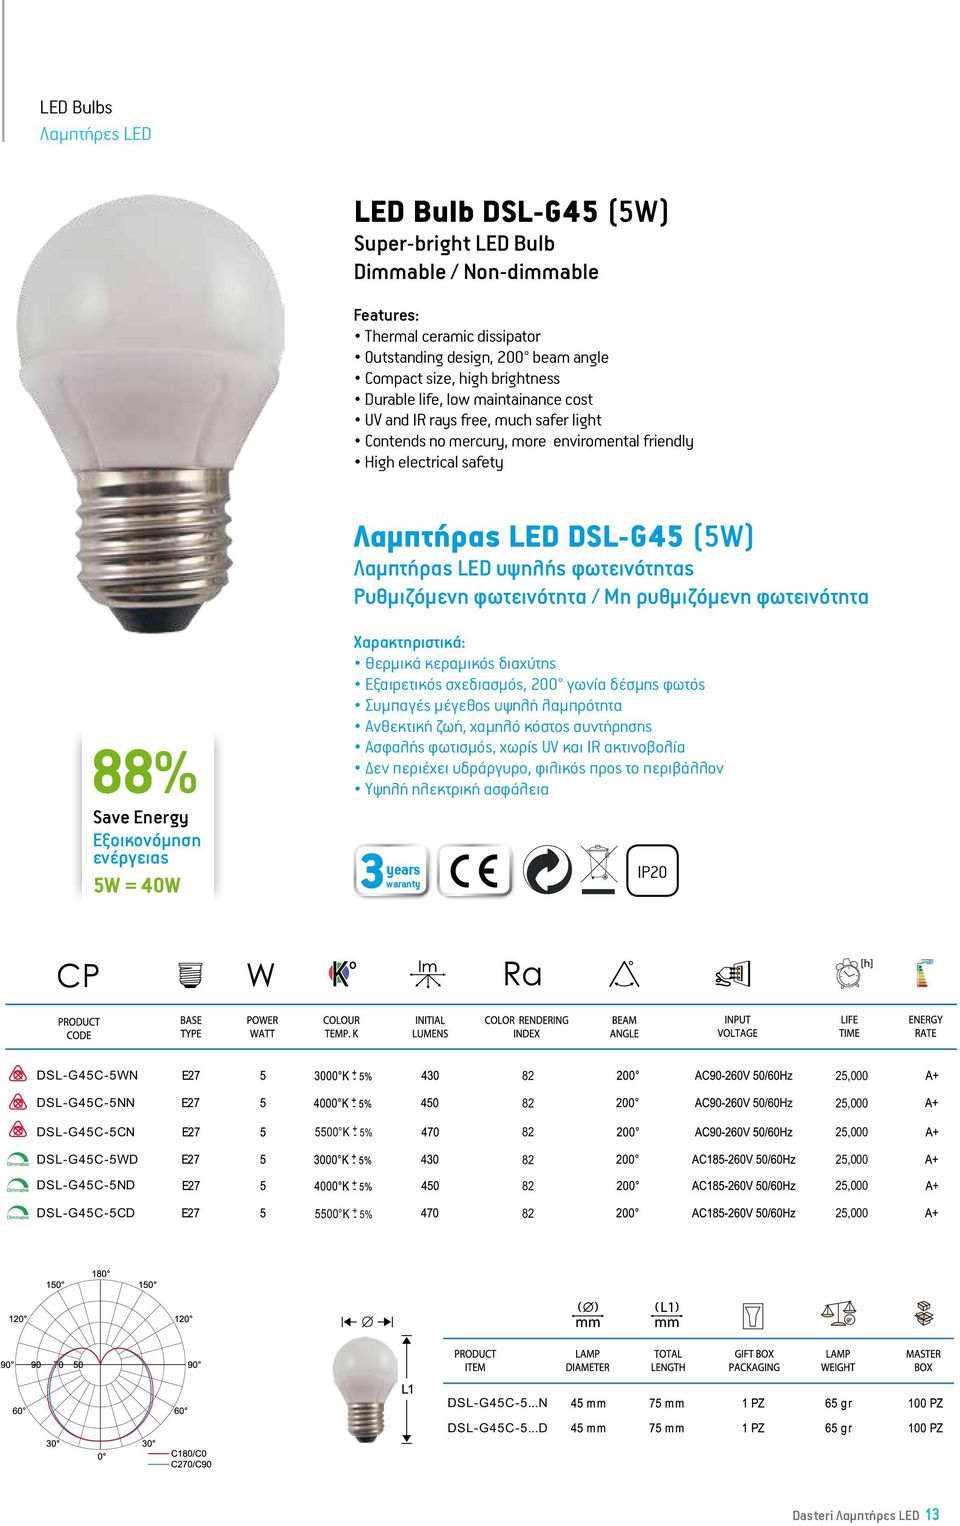 σχεδιασμός, 200 γωνία δέσμης φωτός Συμπαγές μέγεθος υψηλή λαμπρότητα 88% Υψηλή ηλεκτρική ασφάλεια IP20 LED G45 Bulb- 5W = 40W 5W Super-bright LED Bulb